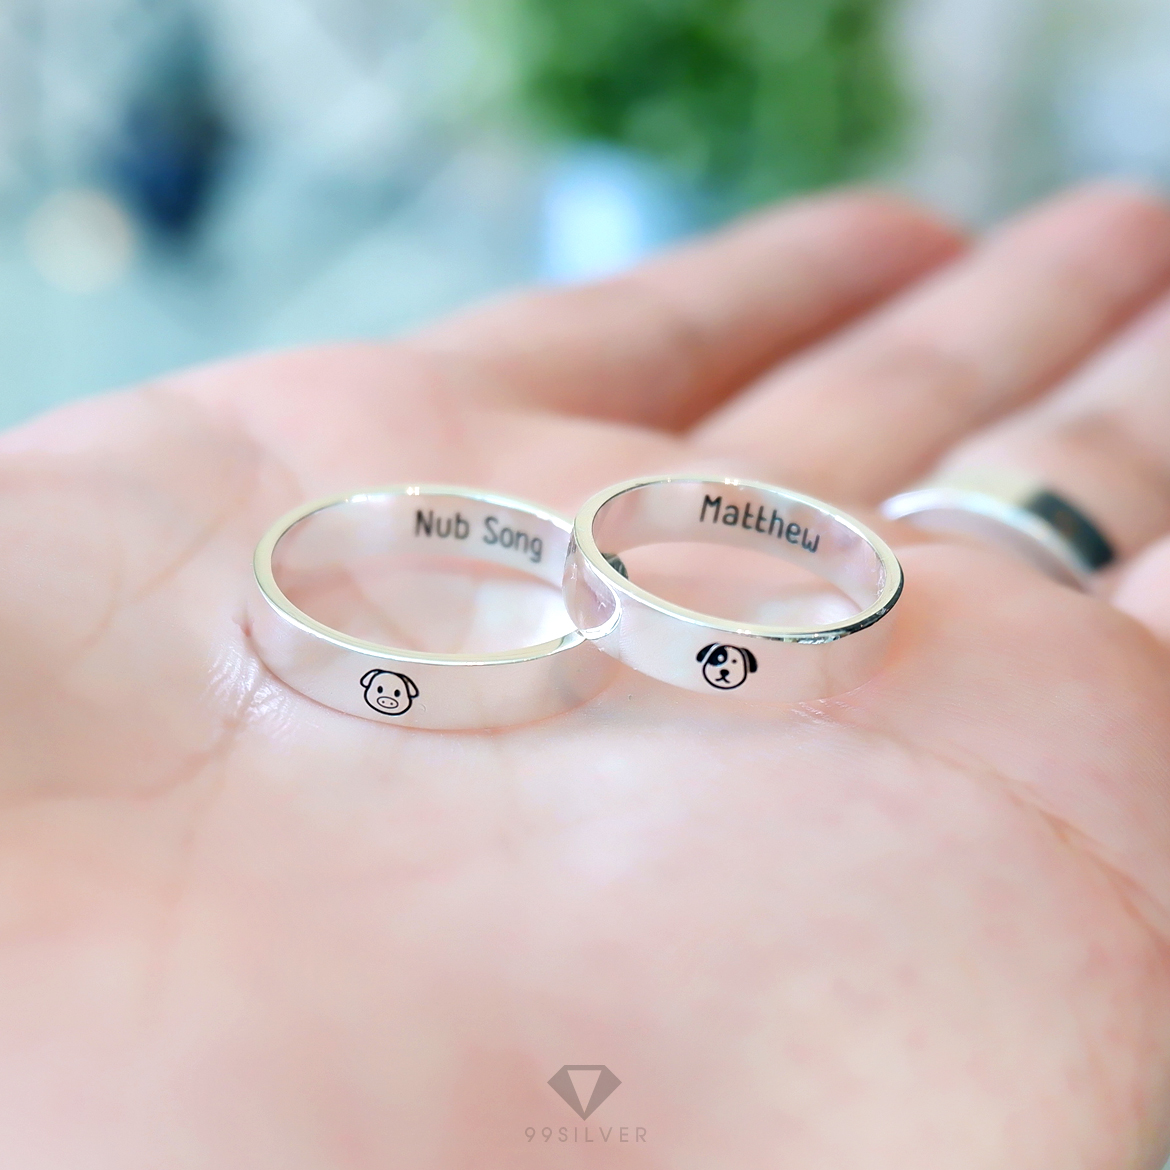 Set แหวนคู่รักสองวง เงินแท้รุ่นมาตรฐาน หน้ากว้าง 4 มิลลิเมตร หนา 1.2 มิลลิเมตร